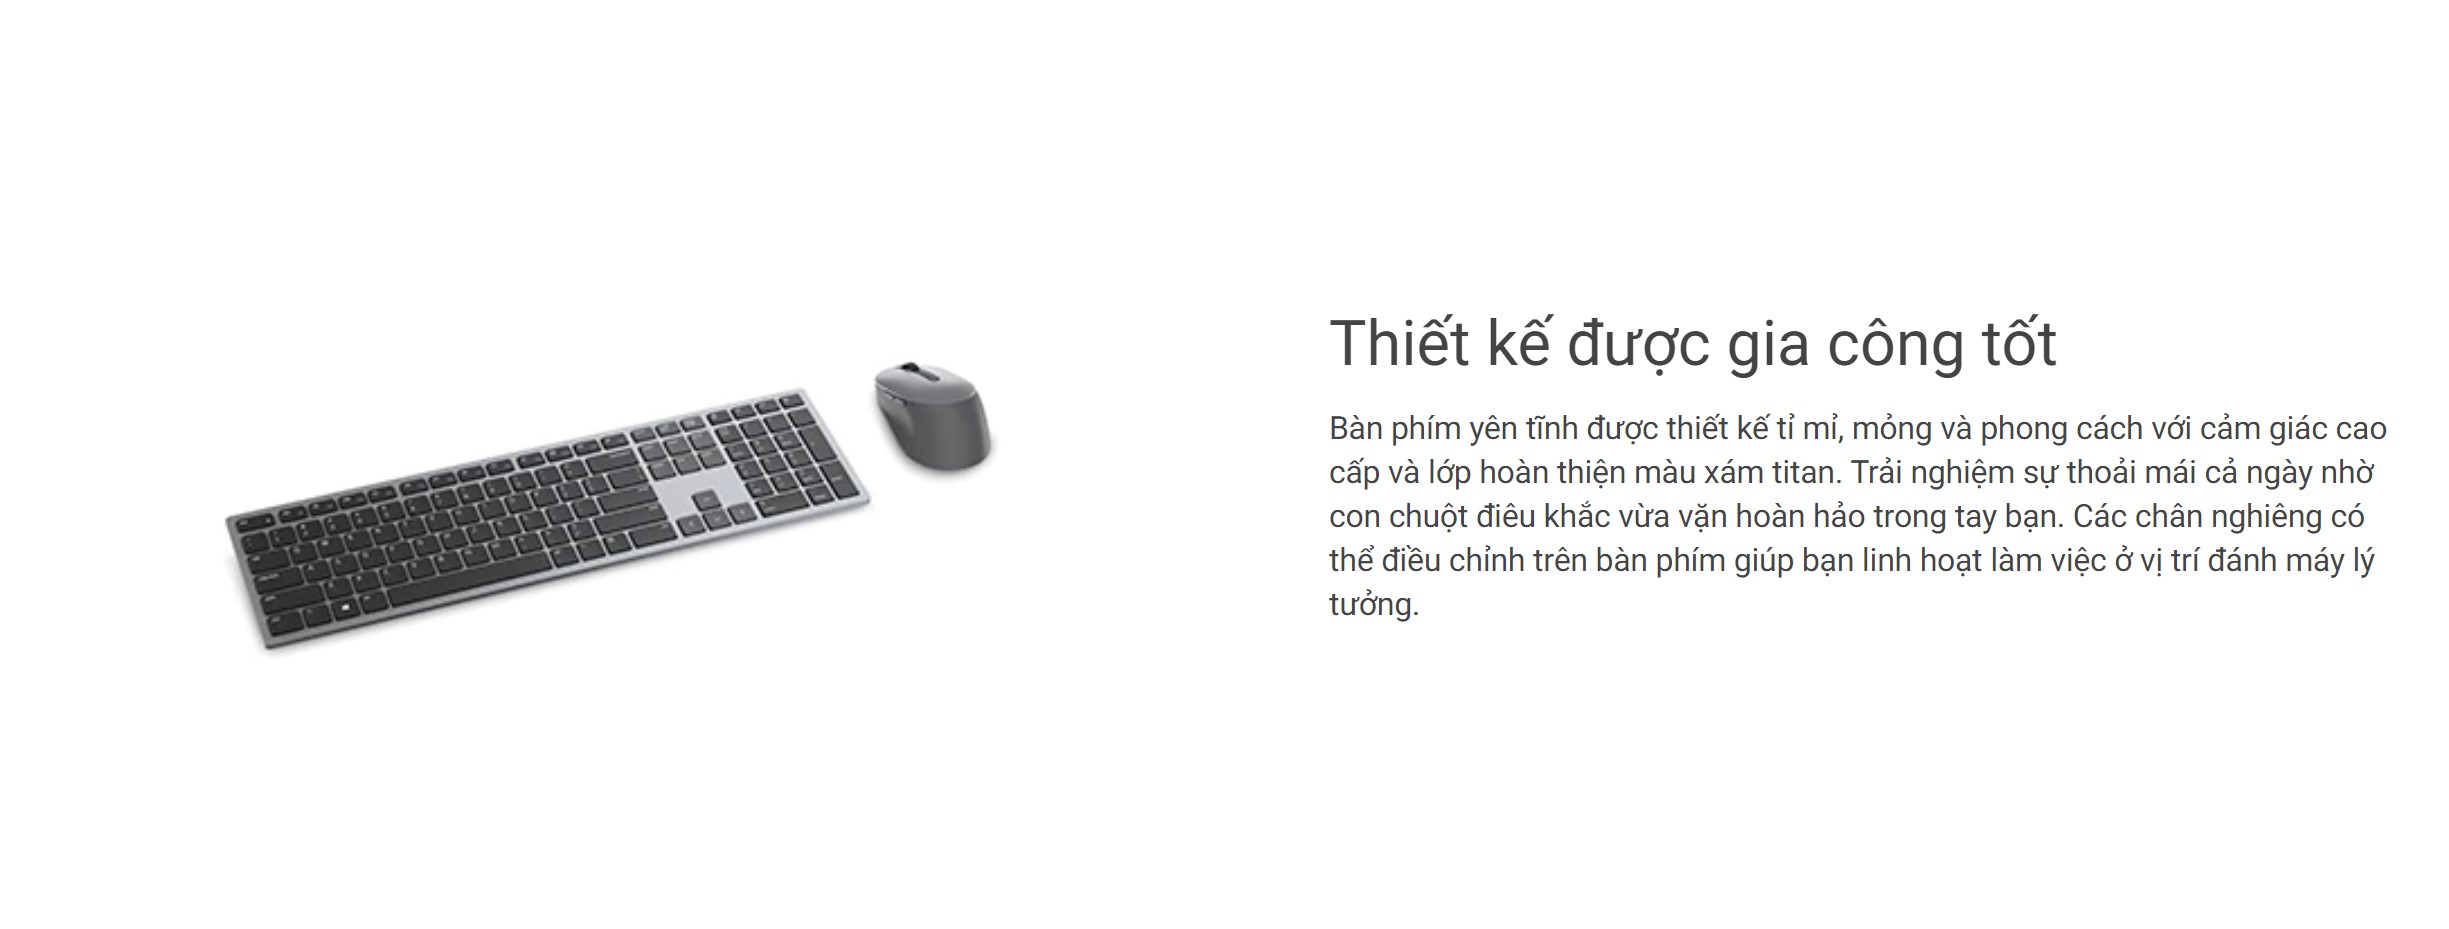 Bộ Bàn phím chuột không dây Dell KM7321W đen (USB/Bluetooth)